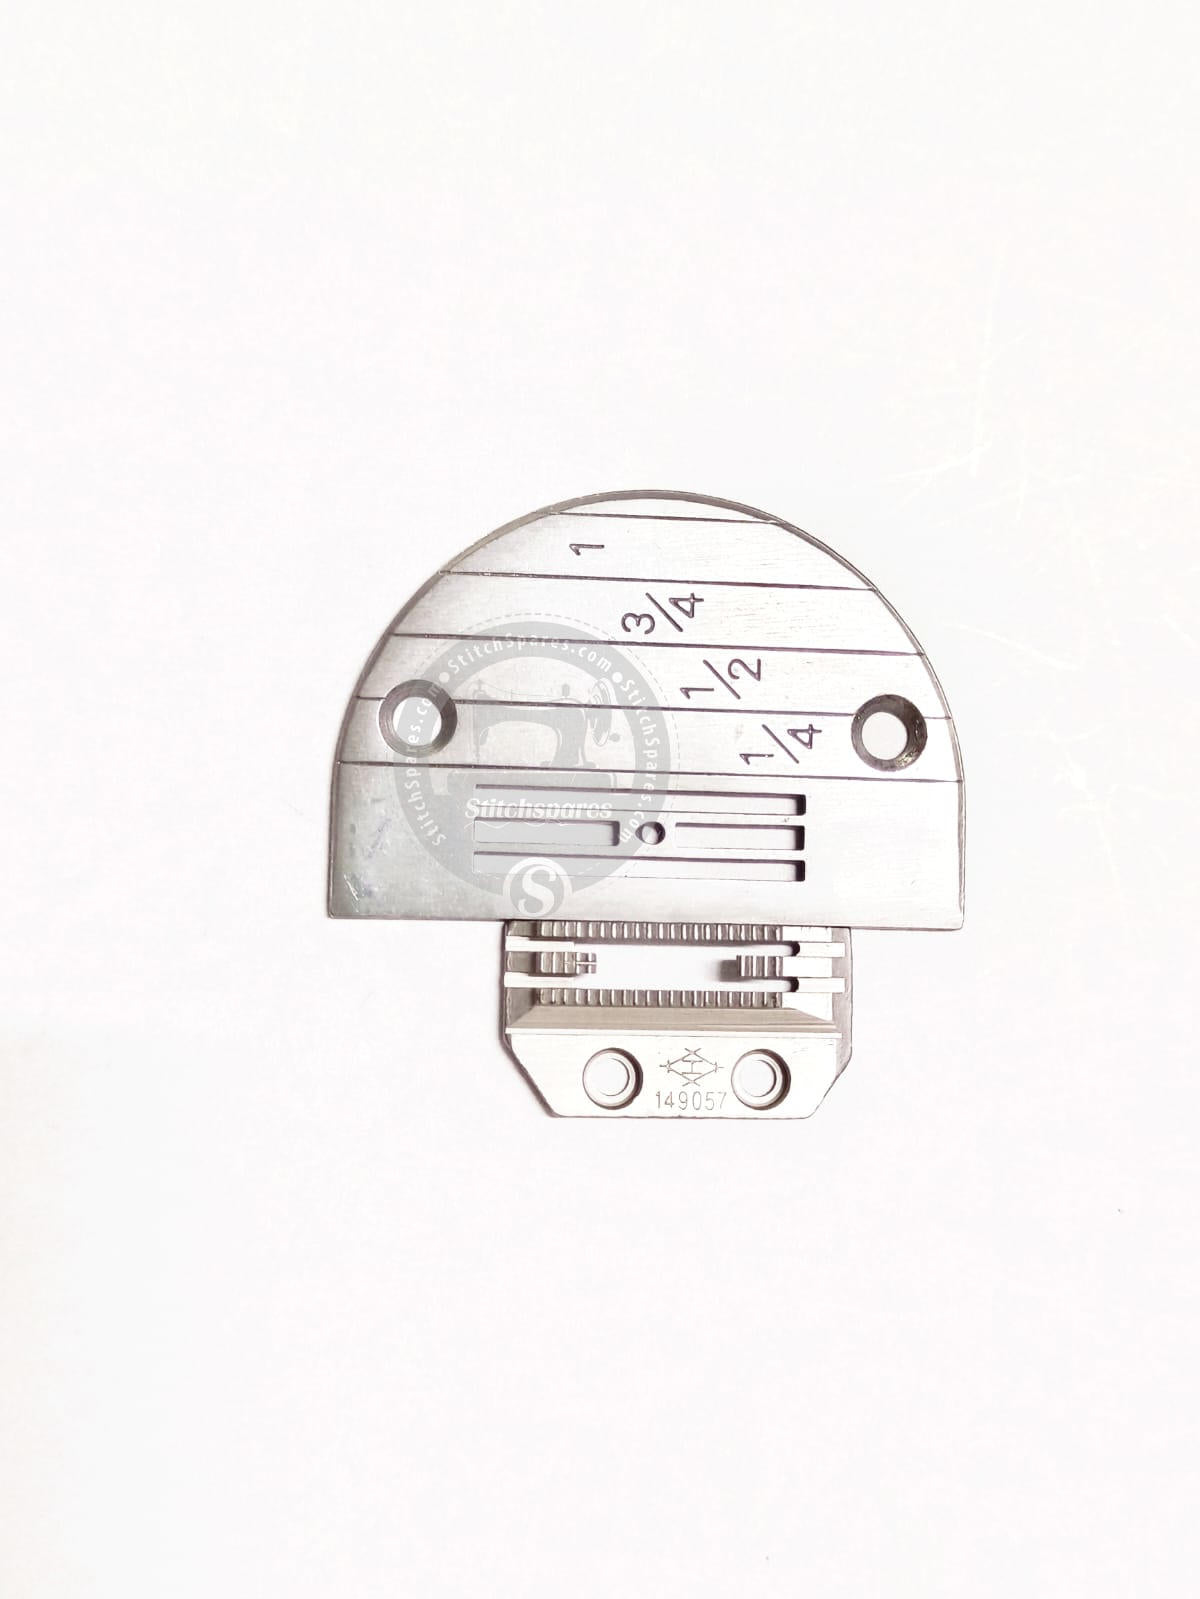 E-20 Juego de placa de aguja y dientes de arrastre Máquina de coser de una sola aguja Piezas de repuesto